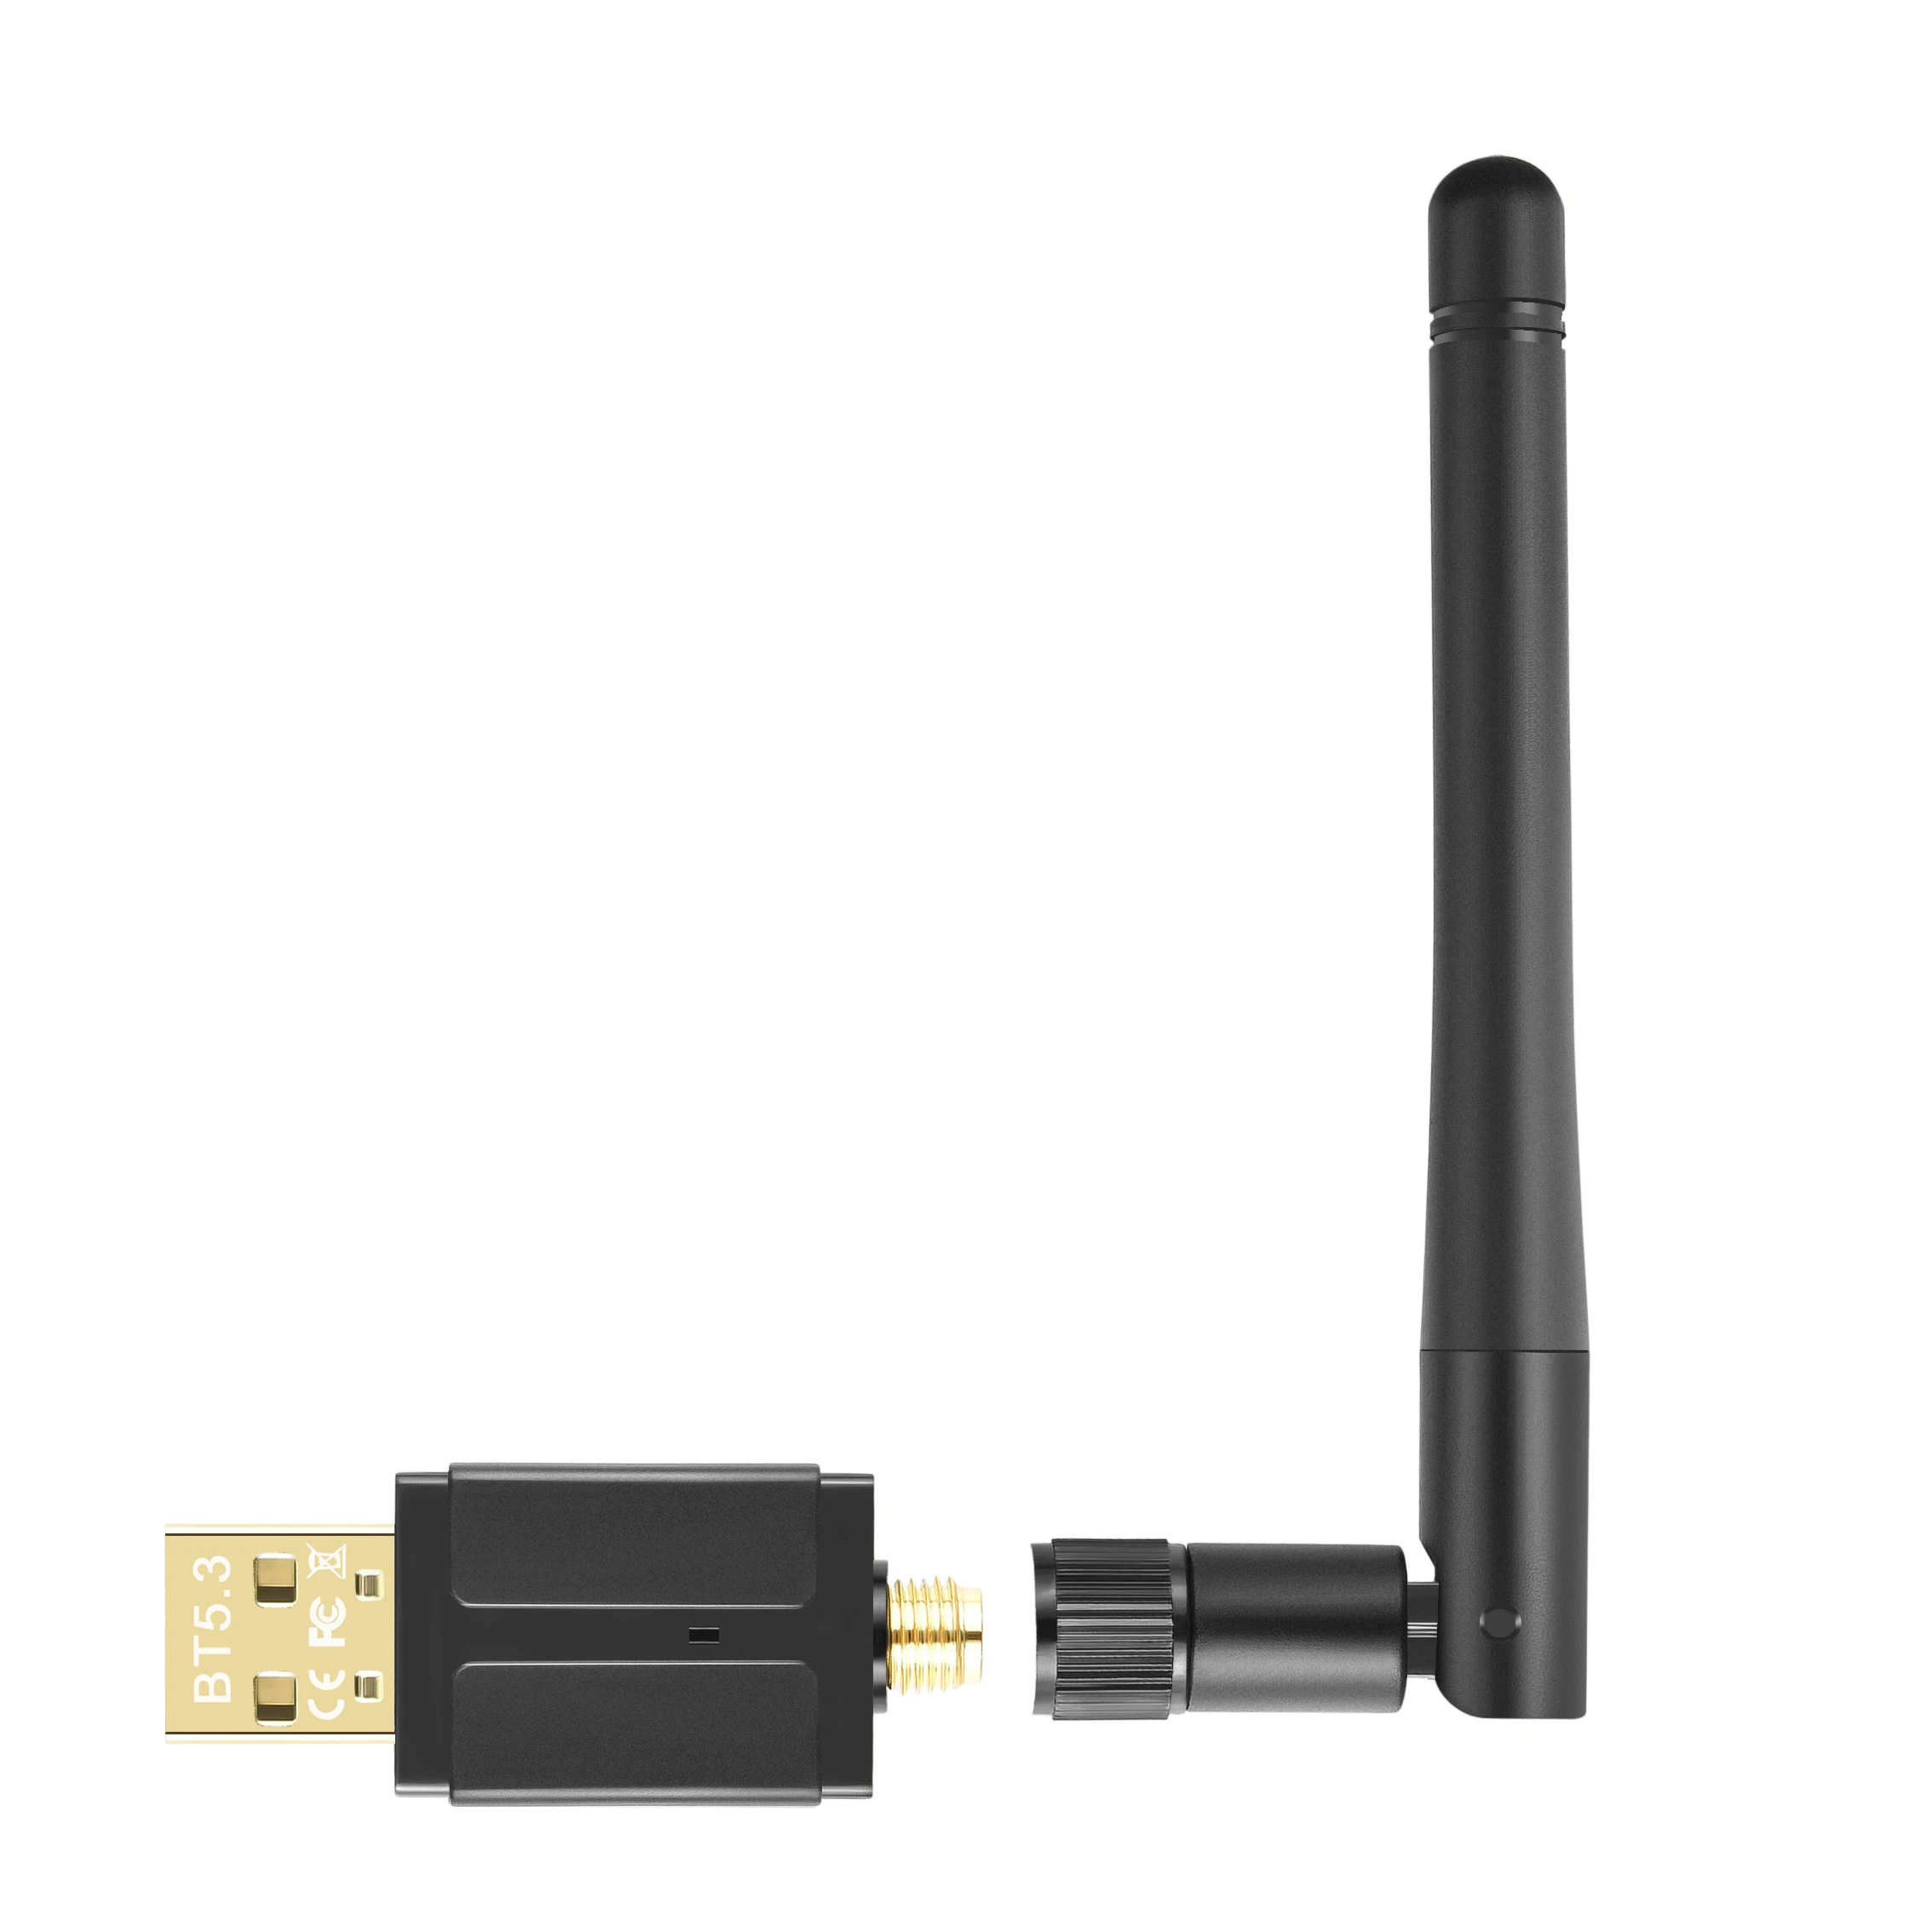 UGREEN USB Adaptador Bluetooth 5.3, Adaptador USB Bluetooth 5.3 para P